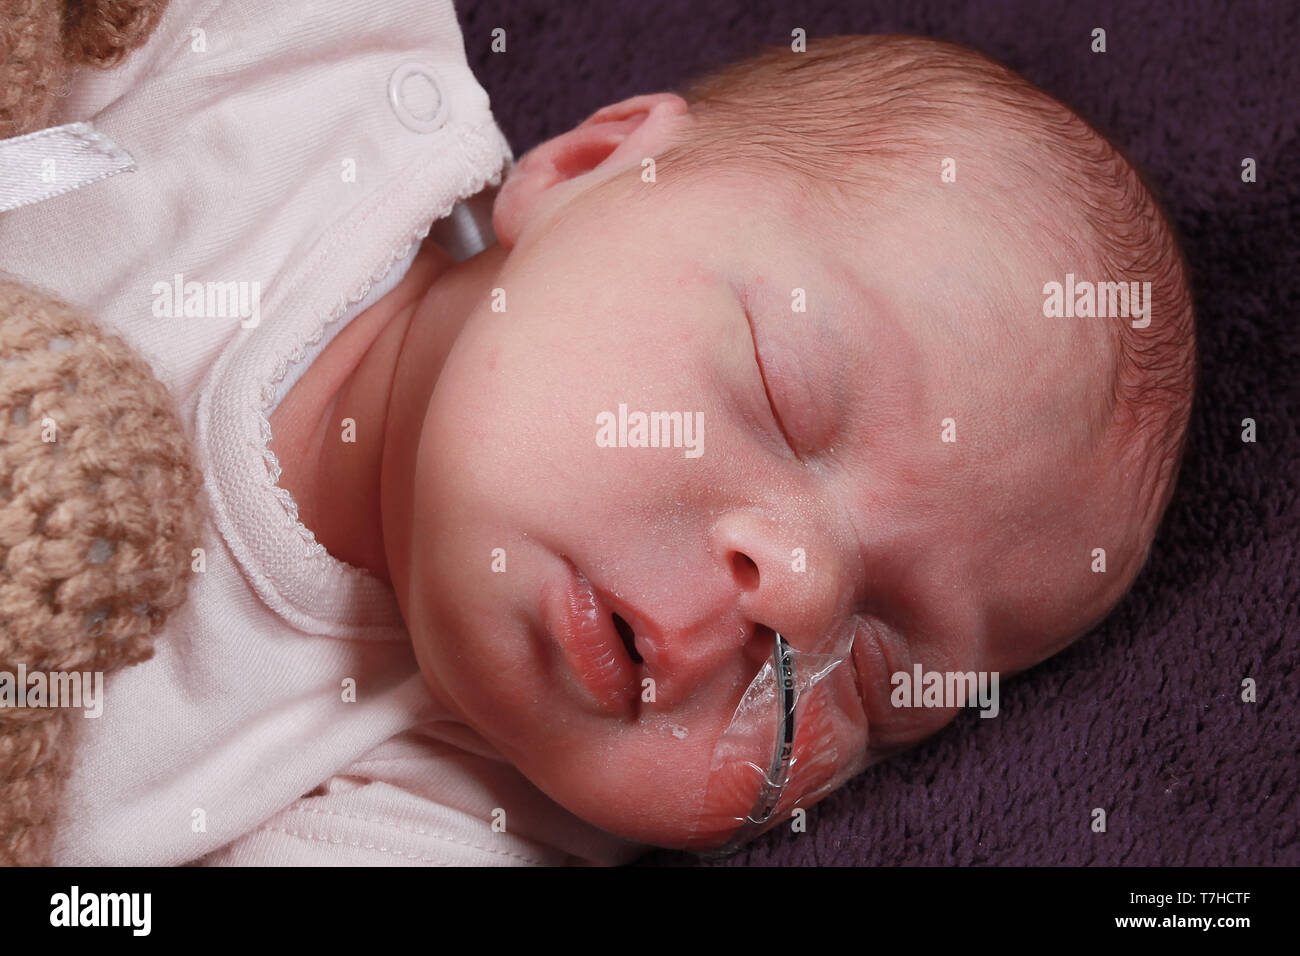 Bébé prématuré fille avec tube de gavage, tube NG Banque D'Images